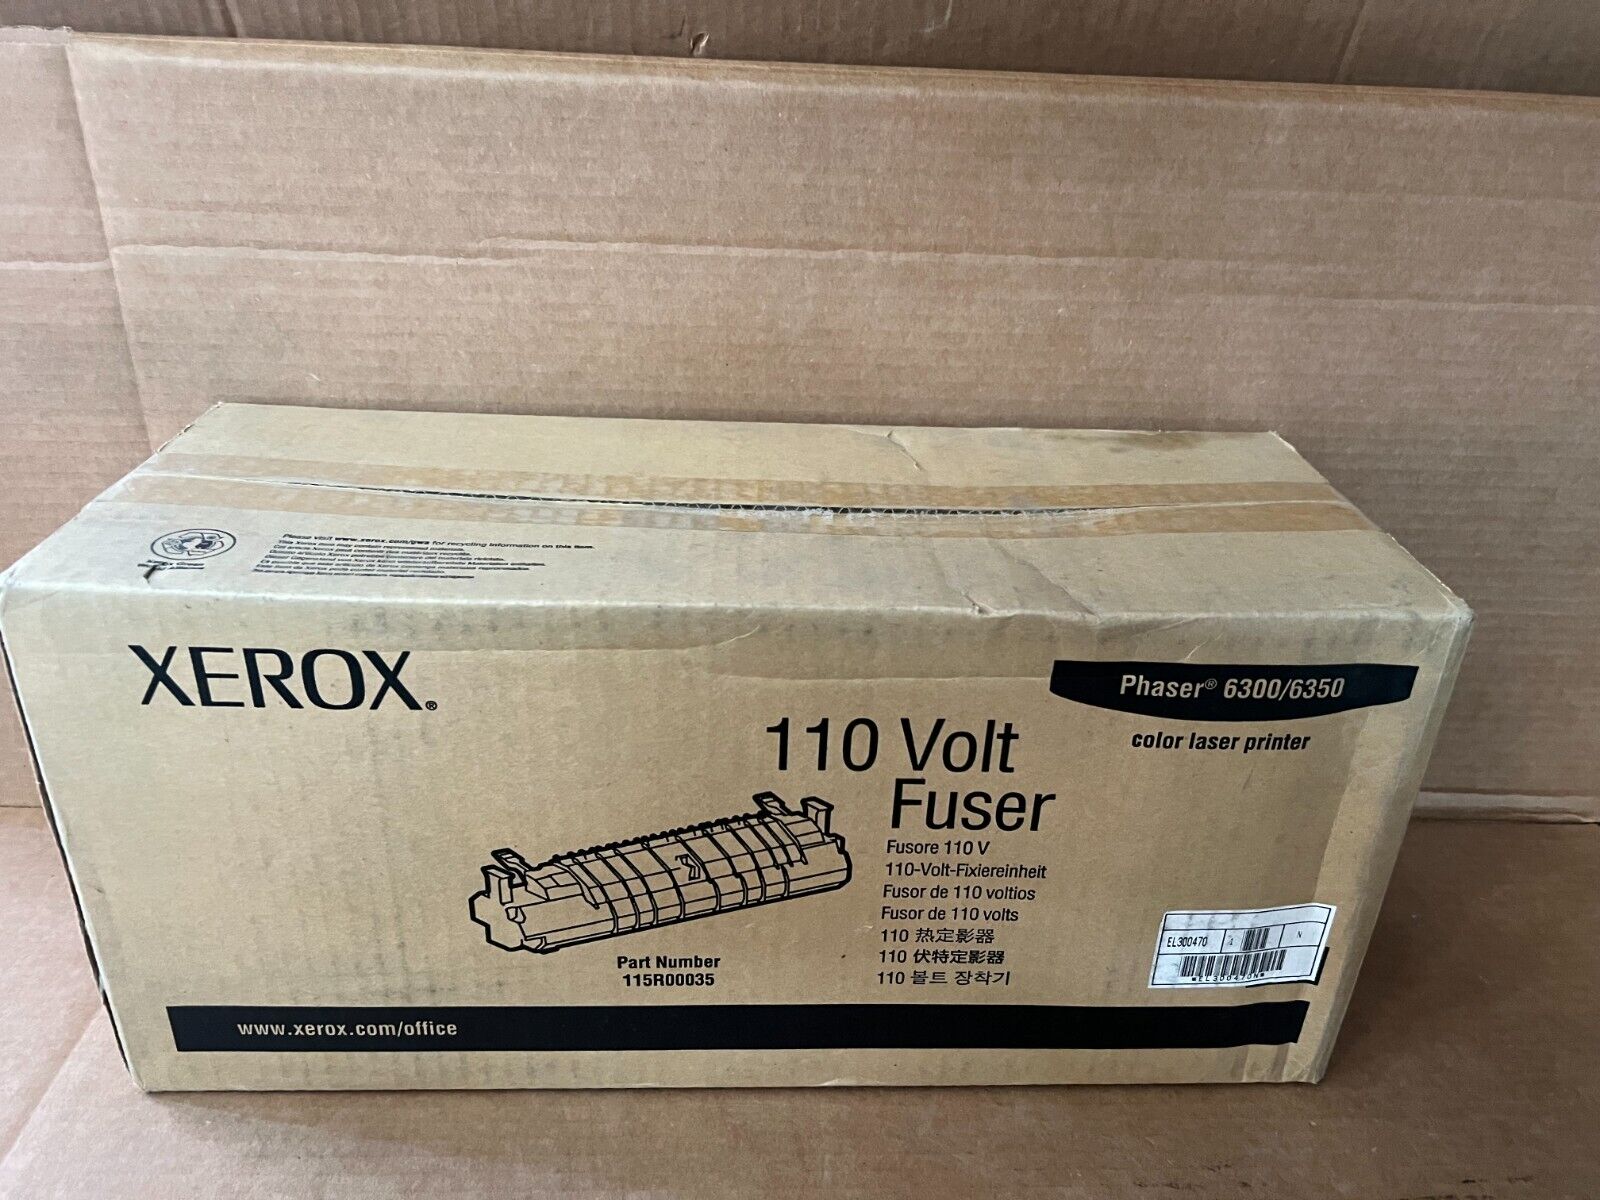 Genuine Xerox 115R00035 110 Volt Fuser (Fixing) Unit 115R0035, 115R035, 115R35